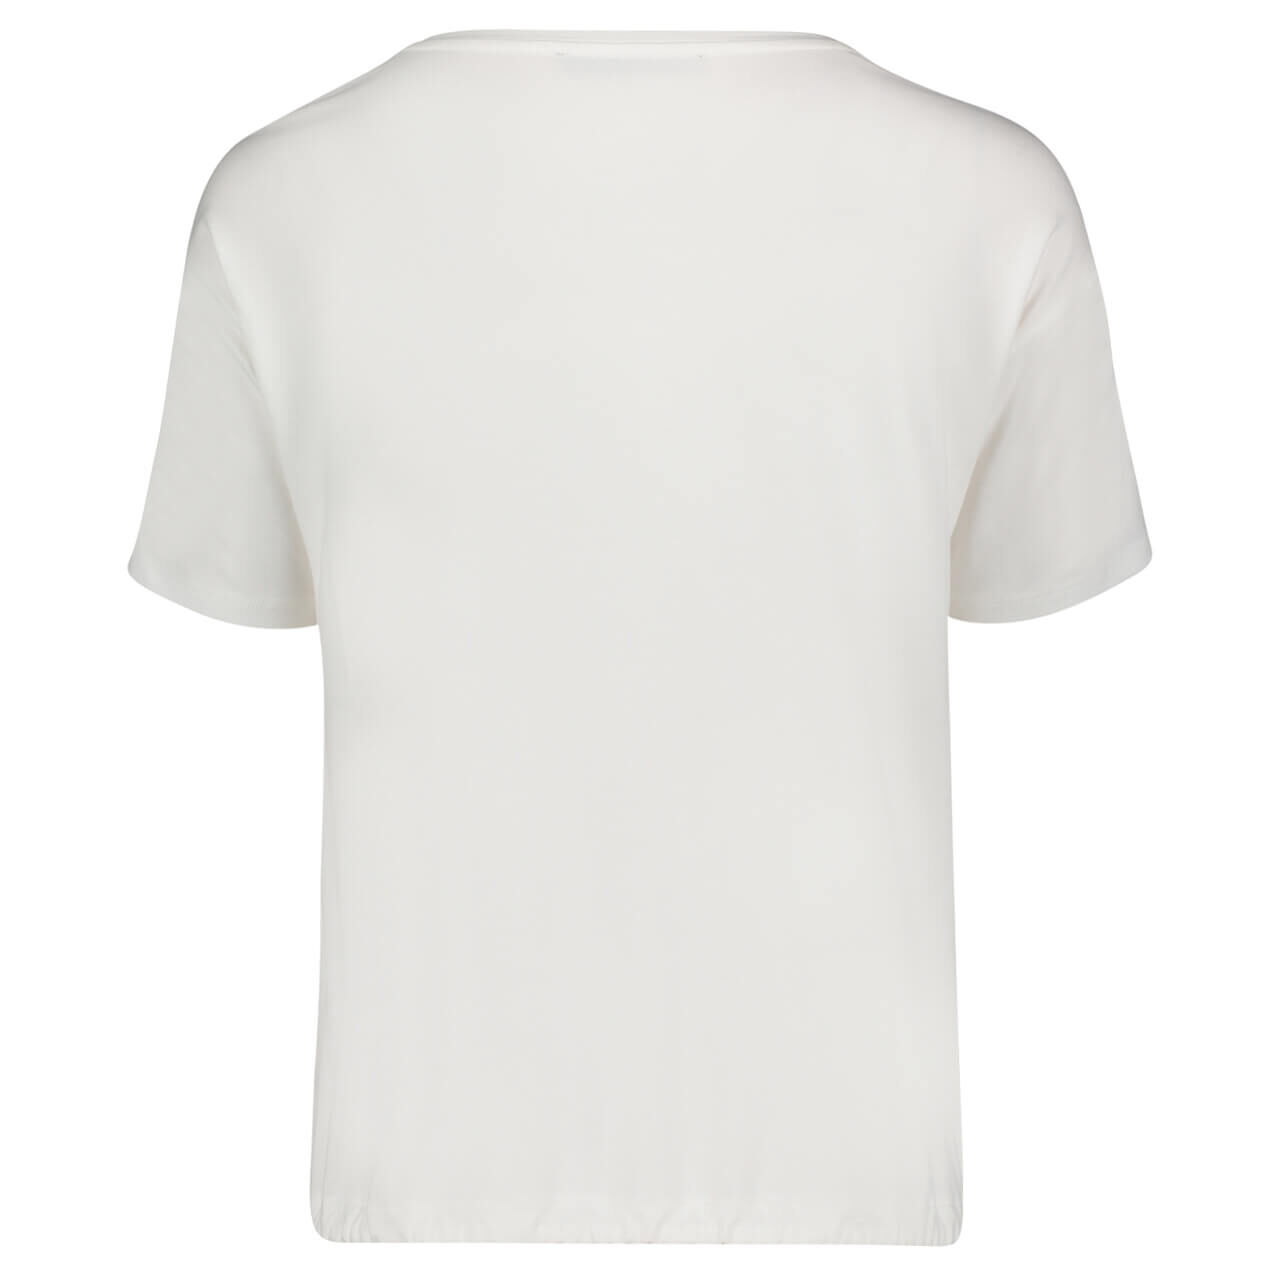 Betty Barclay T-Shirt für Damen in Weiß mit Print, FarbNr.: 1891